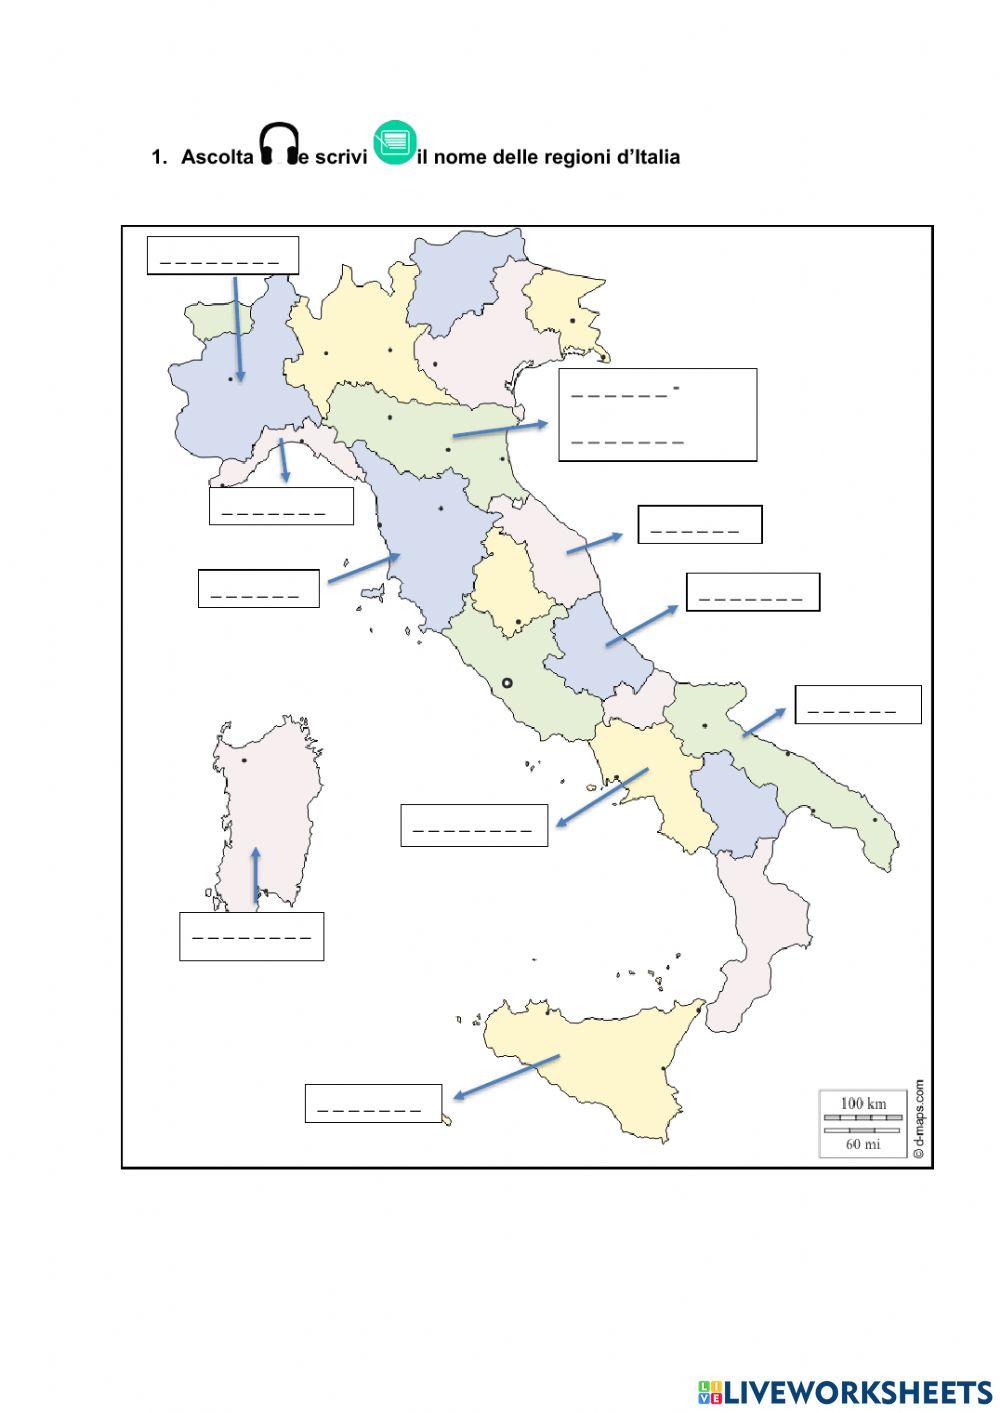 Le regioni d'Italia